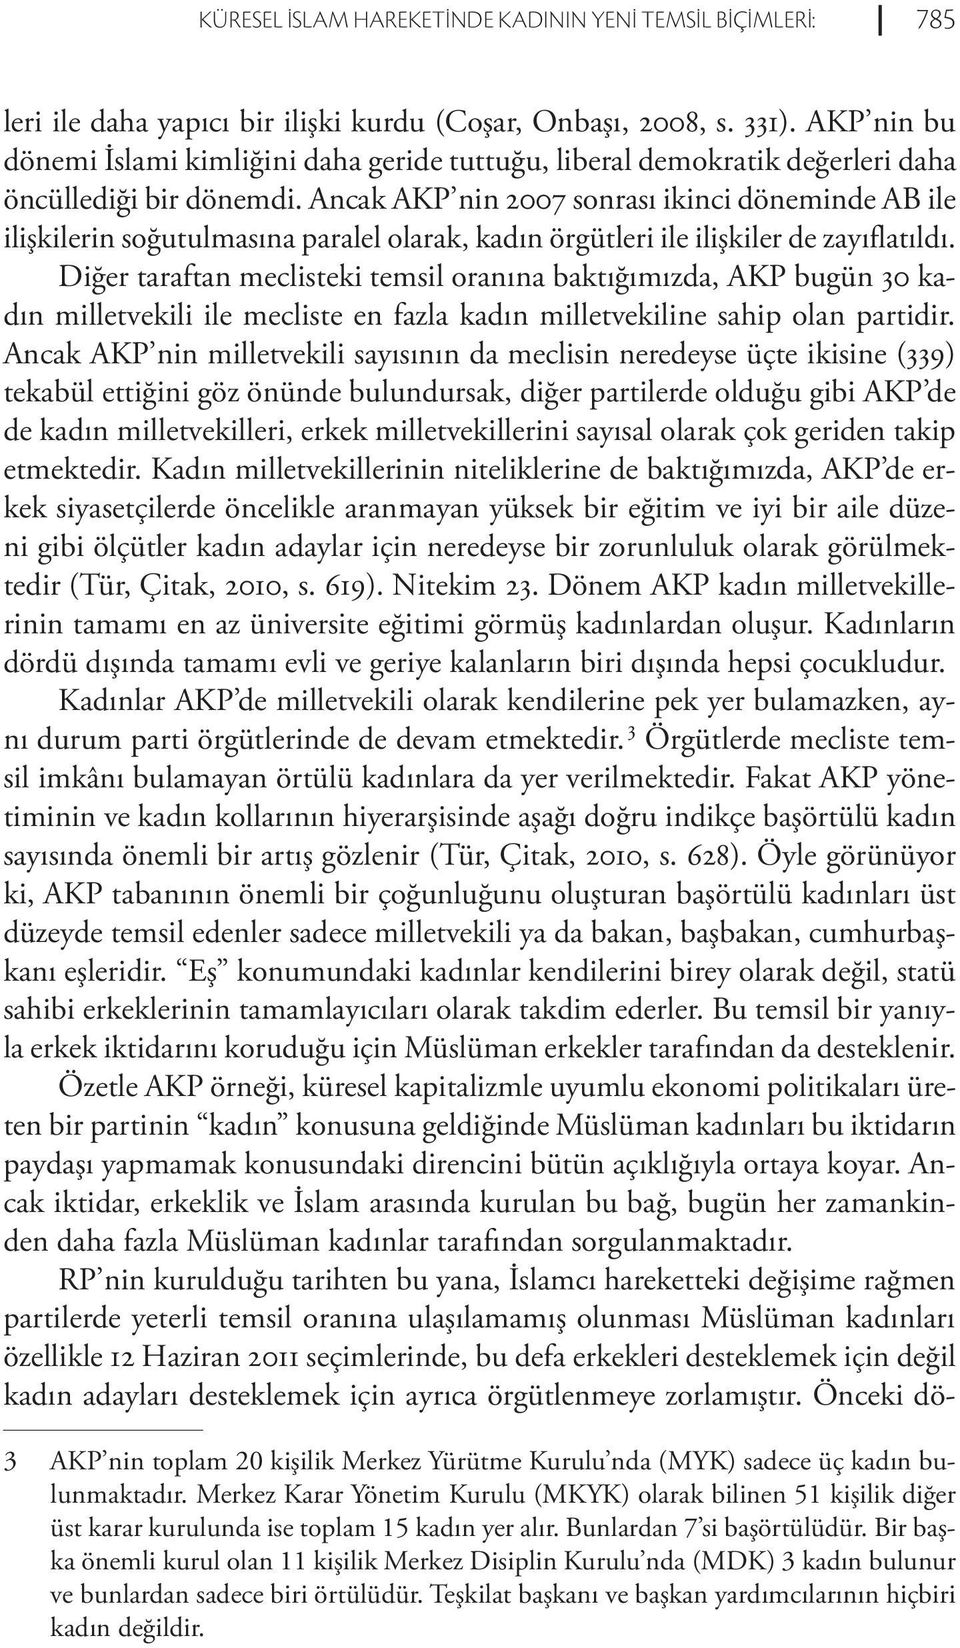 Ancak AKP nin 2007 sonrası ikinci döneminde AB ile ilişkilerin soğutulmasına paralel olarak, kadın örgütleri ile ilişkiler de zayıflatıldı.